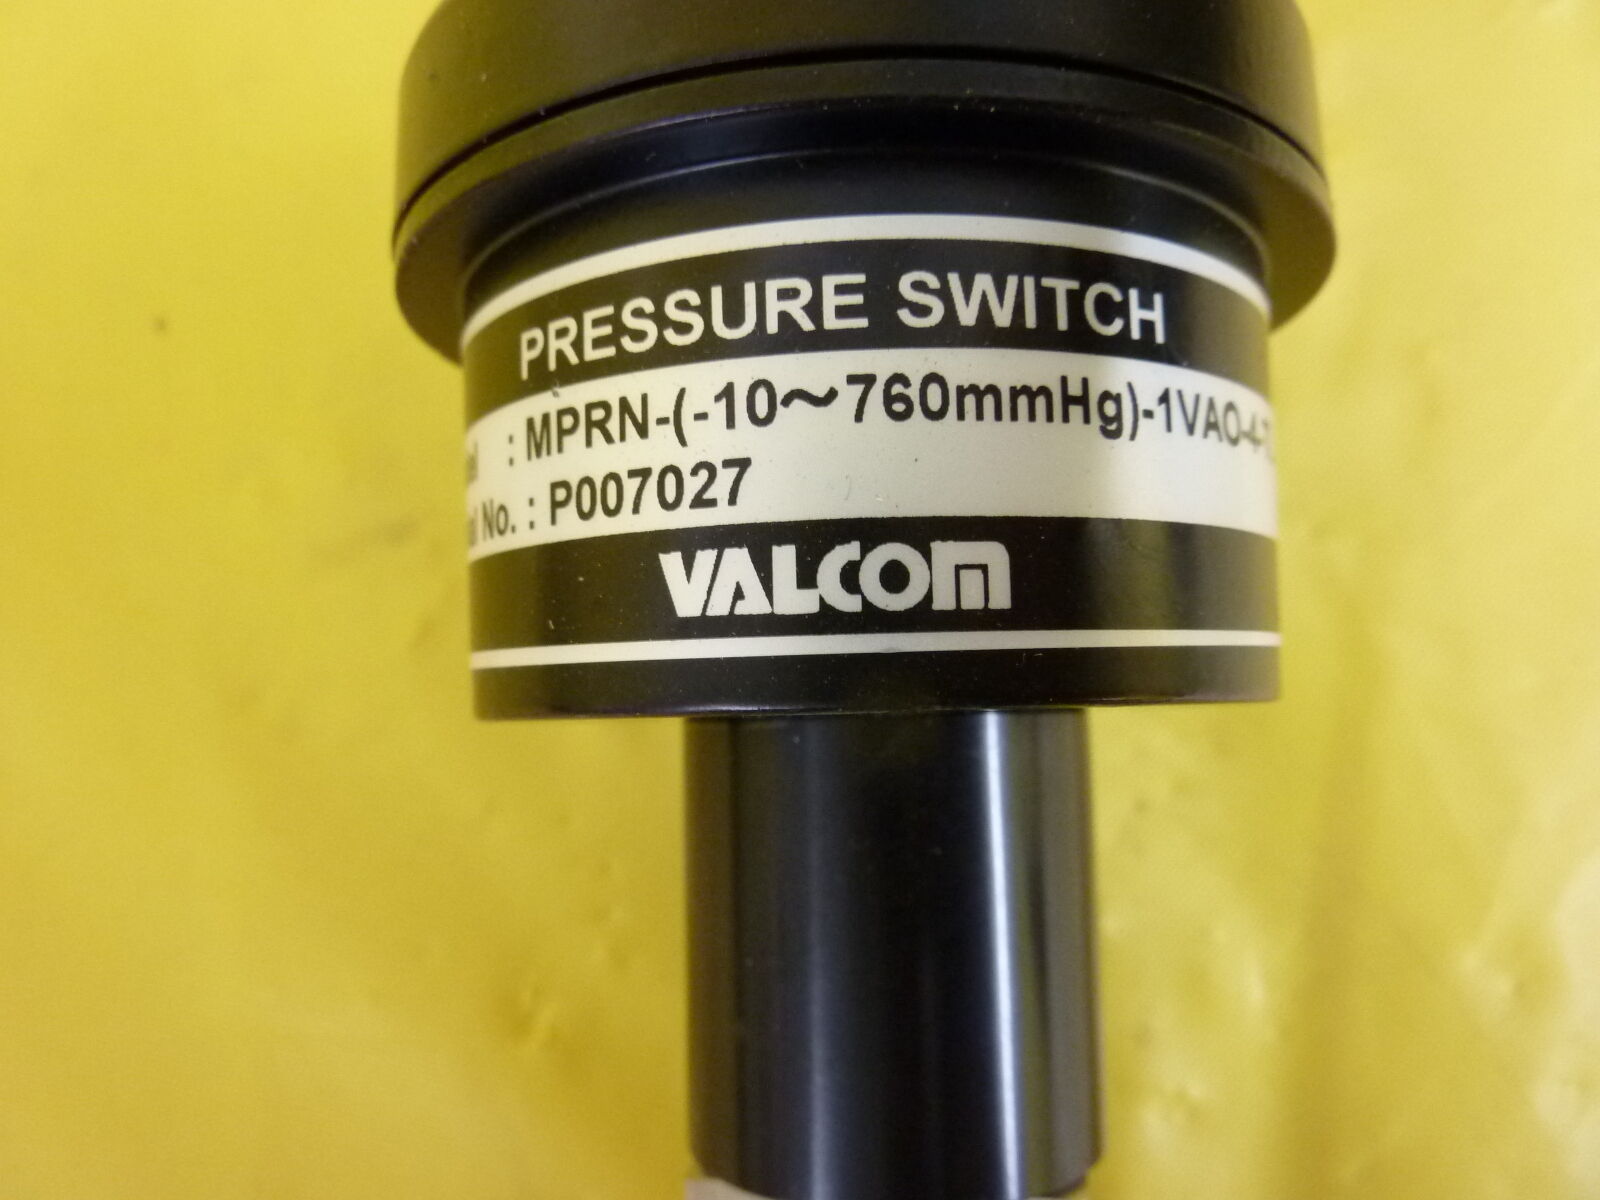 Valcom MPRN-(-10~760mmHg)-1VAO-4-TL Pressure Switch lot of 8 working